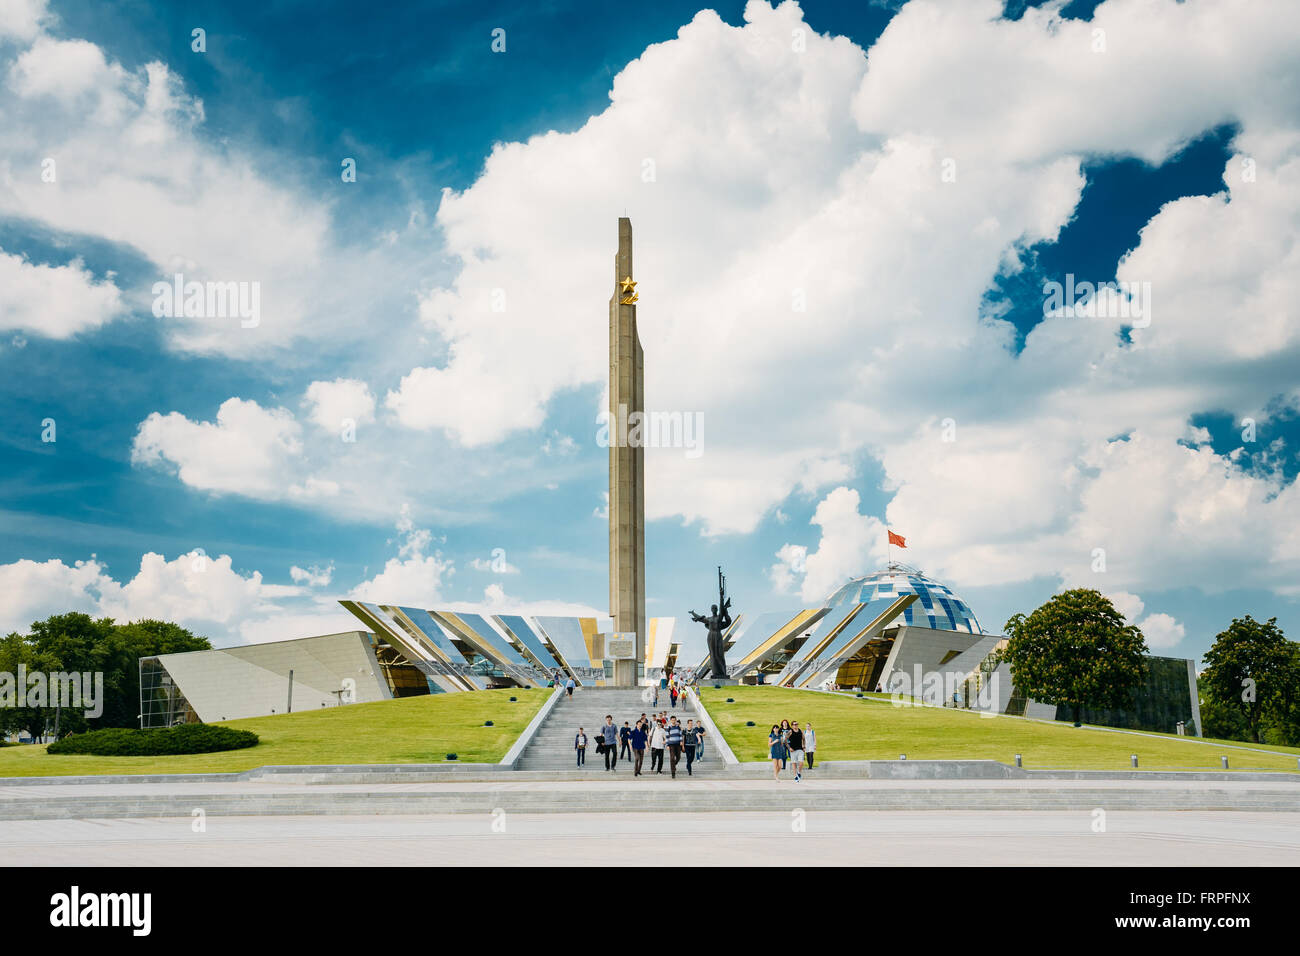 MINSK, BELARUS - 2 juin 2015 : Monument près du bâtiment du musée de Biélorussie La Grande Guerre Patriotique à Minsk, Bélarus Banque D'Images